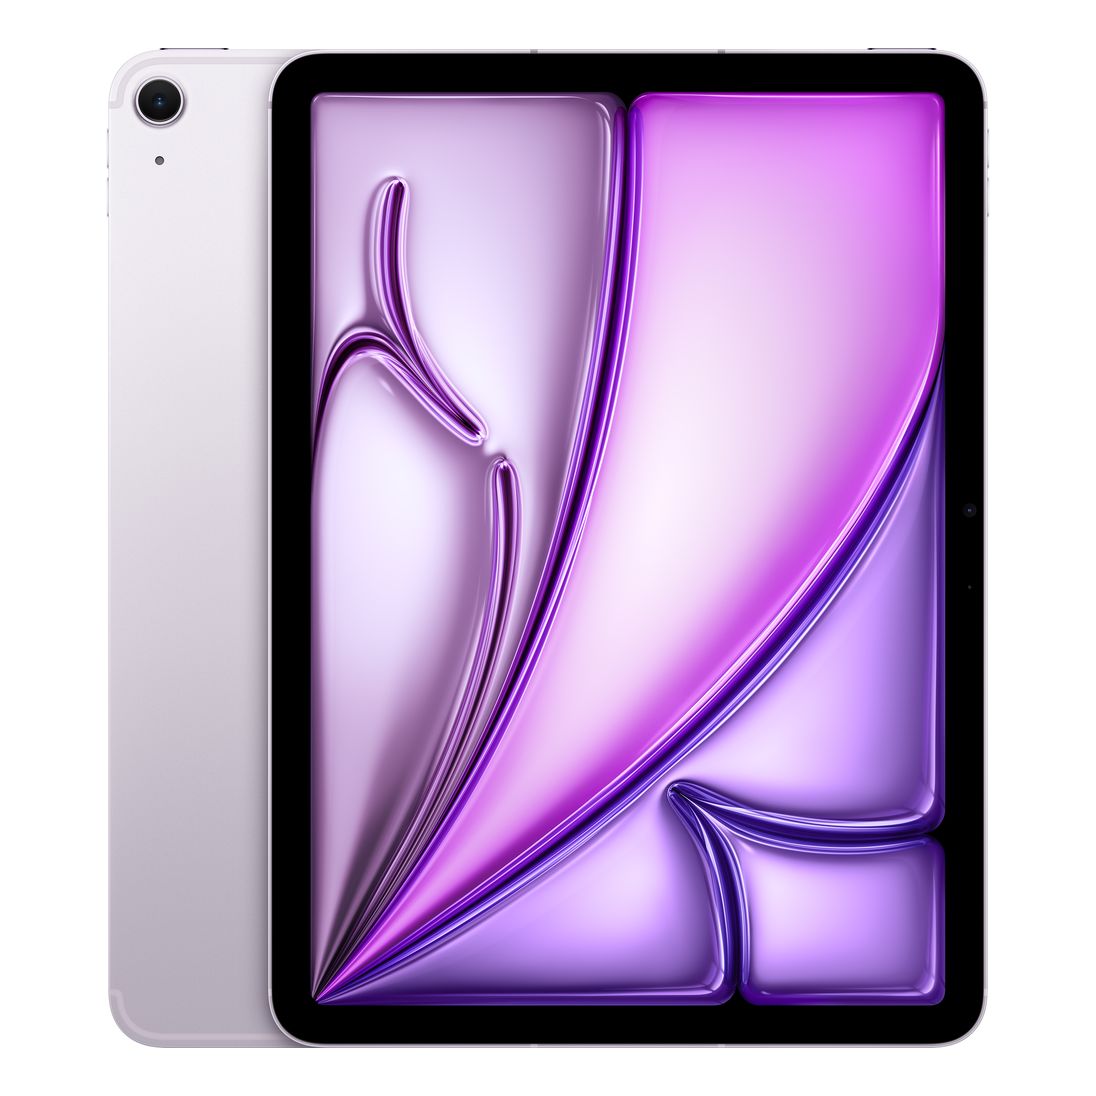 Apple 11-inch iPad Air (M2) Wi-Fi 128GB - Purple